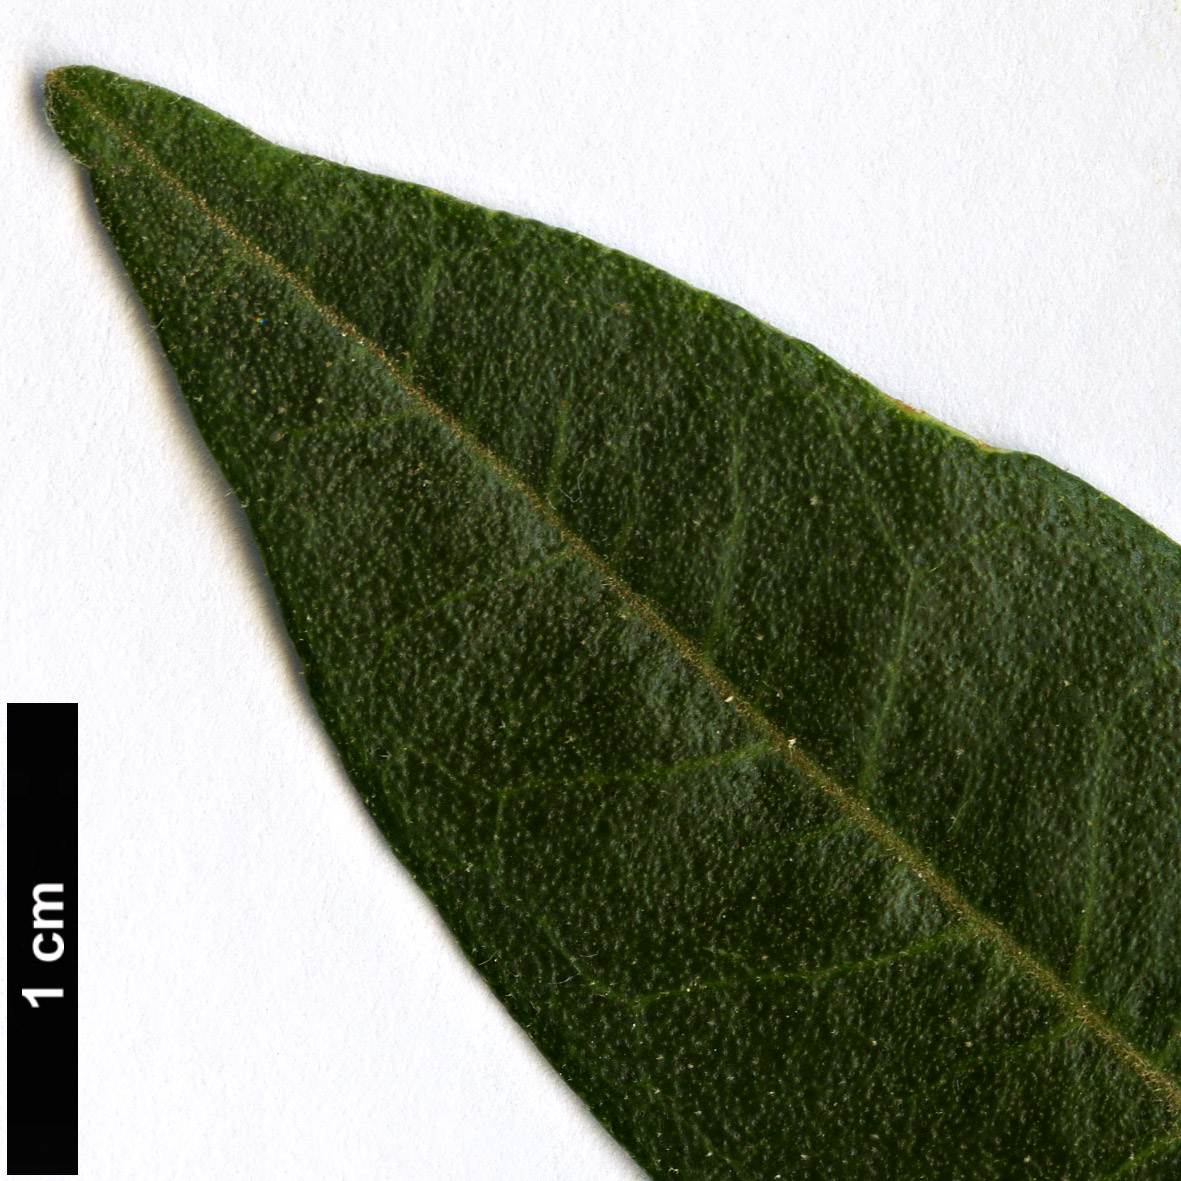 High resolution image: Family: Rutaceae - Genus: Zieria - Taxon: arborescens